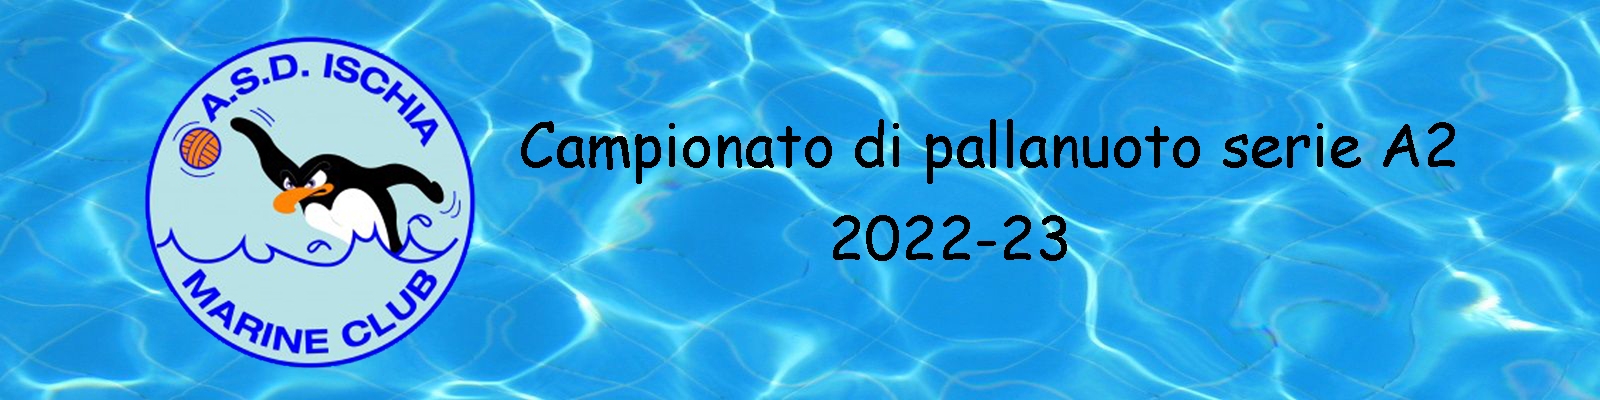 Ischia Marine Club anno 2022-23